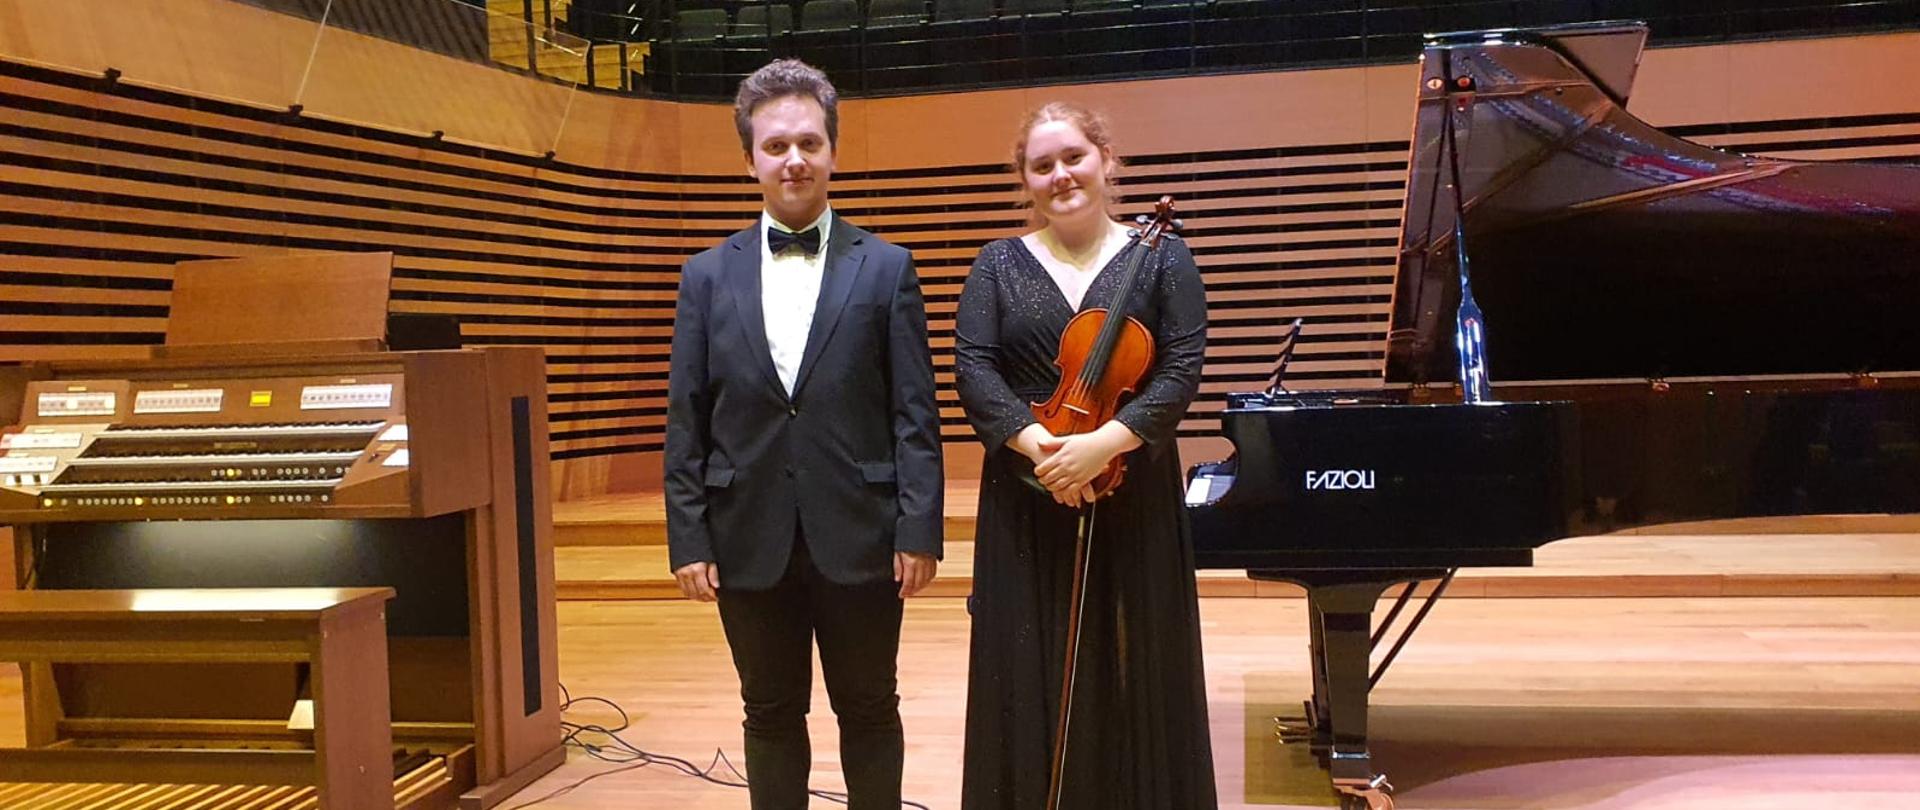 Mężczyzna i kobieta stoją na estradzie, kobieta trzyma przed sobą skrzypce i smyczek, po prawej stronie stoi fortepian Fazioli, po lewej stronie stoją organy.